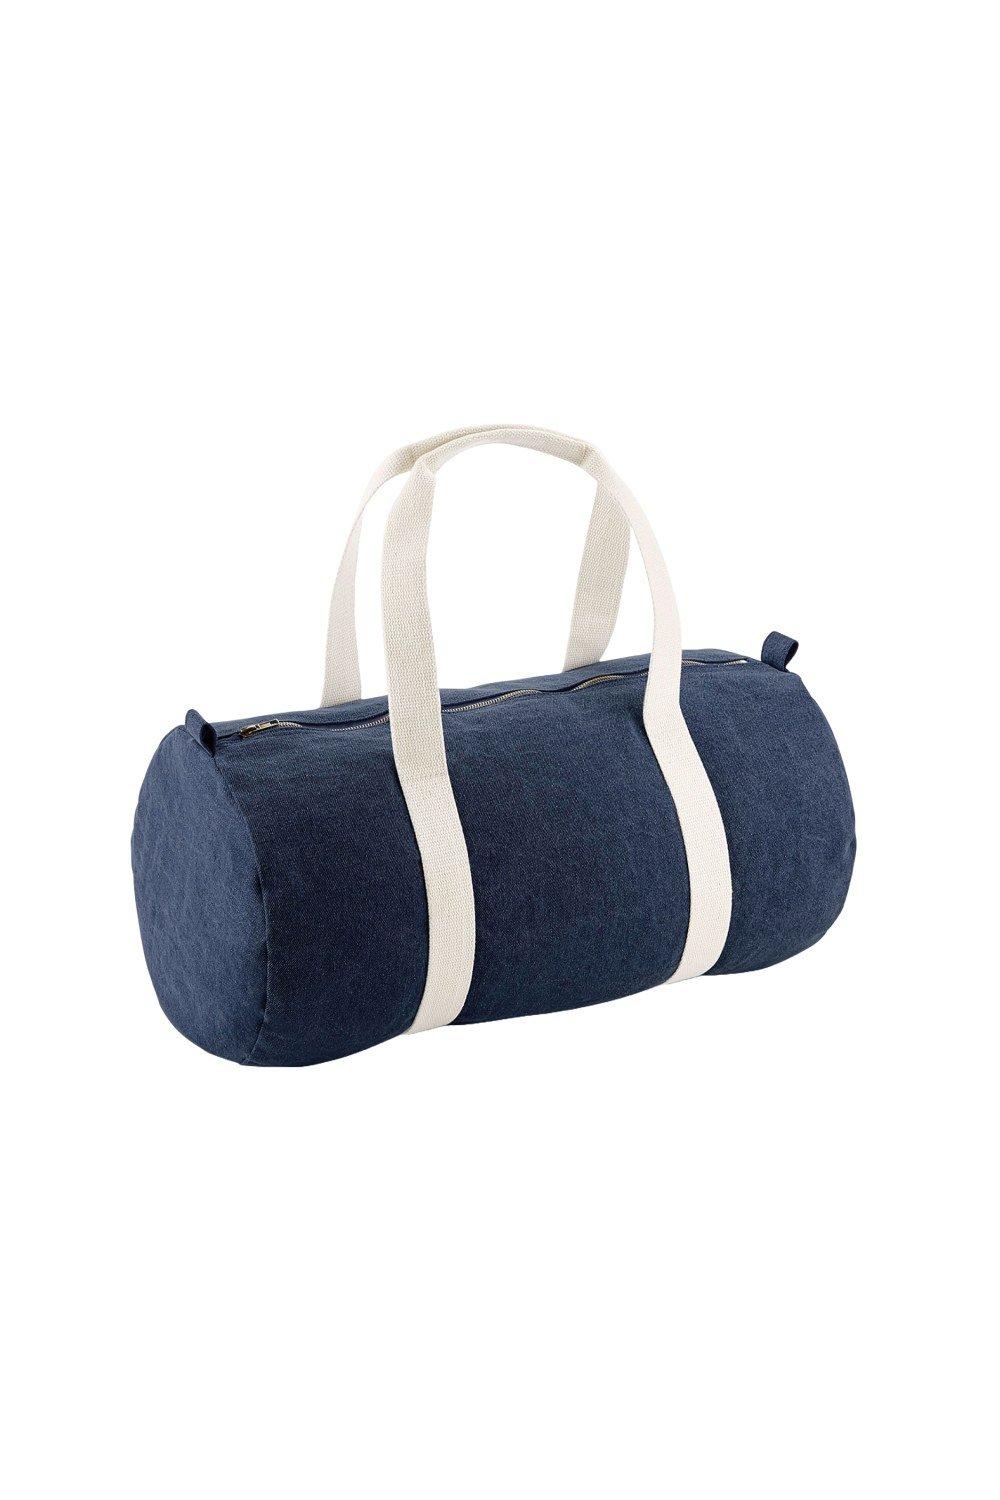 Джинсовая спортивная сумка Barrel Bagbase, синий